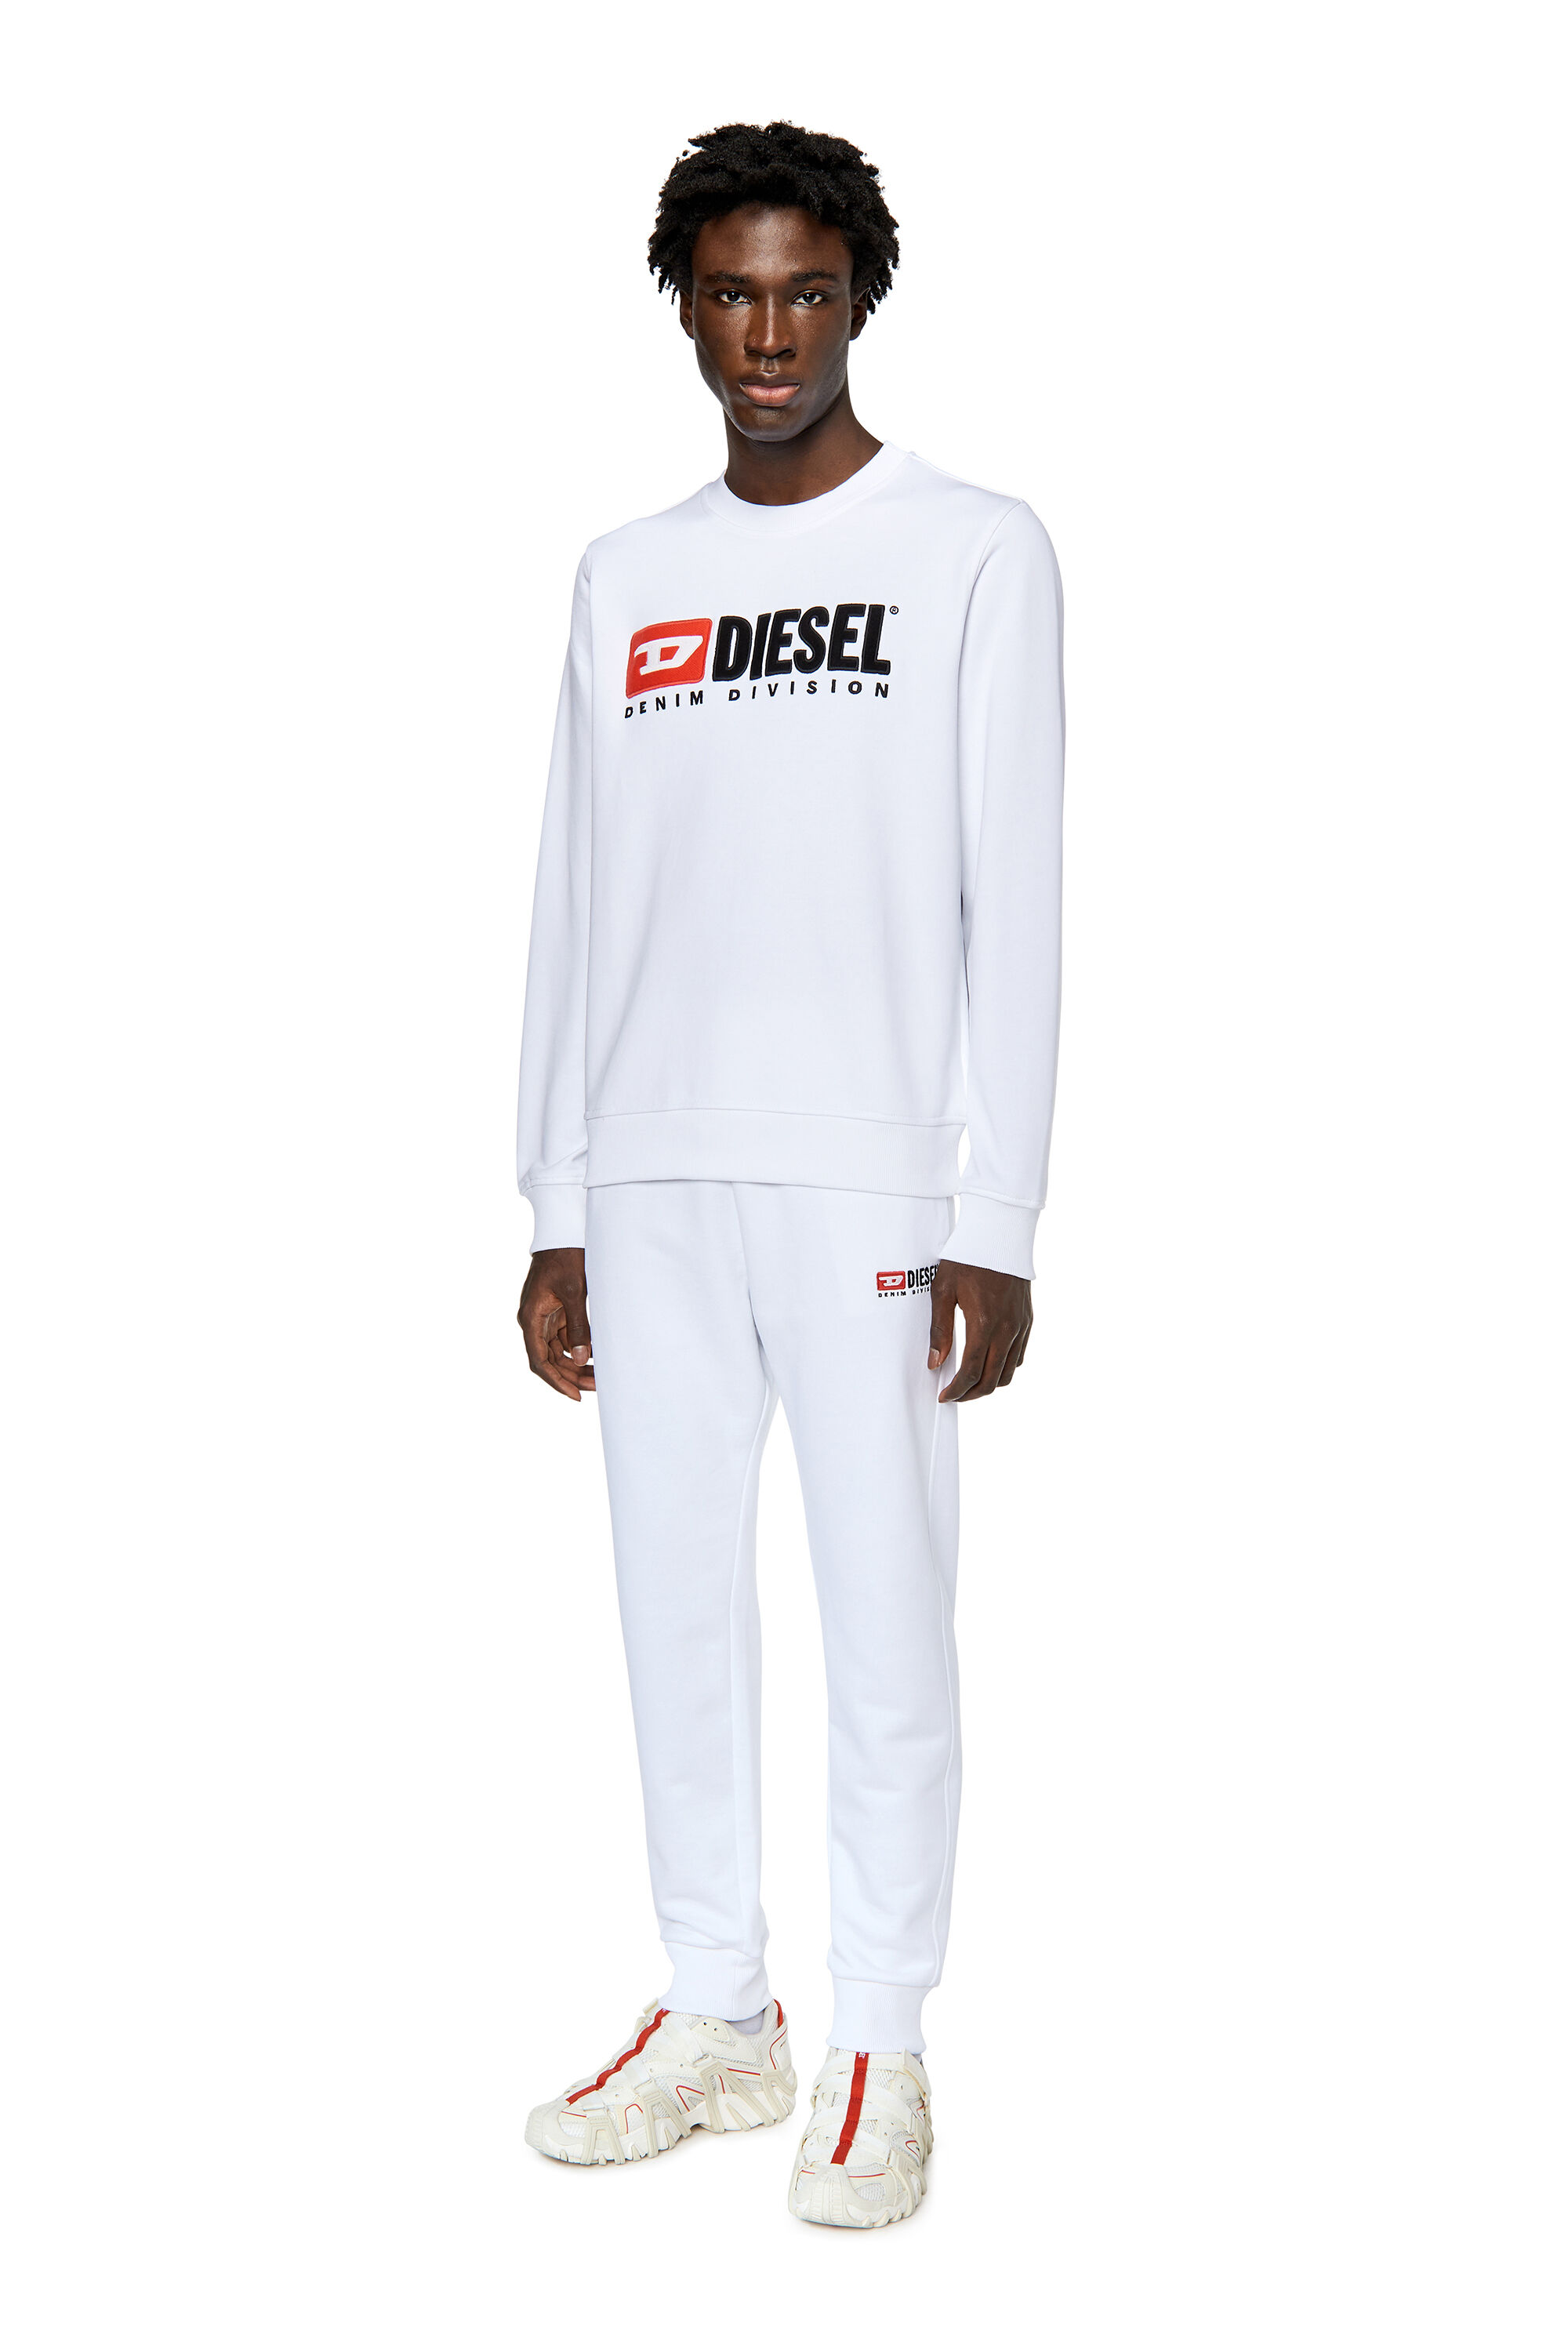 Diesel - S-GINN-DIV, Man Sweatshirt with logo appliqué in White - Image 1